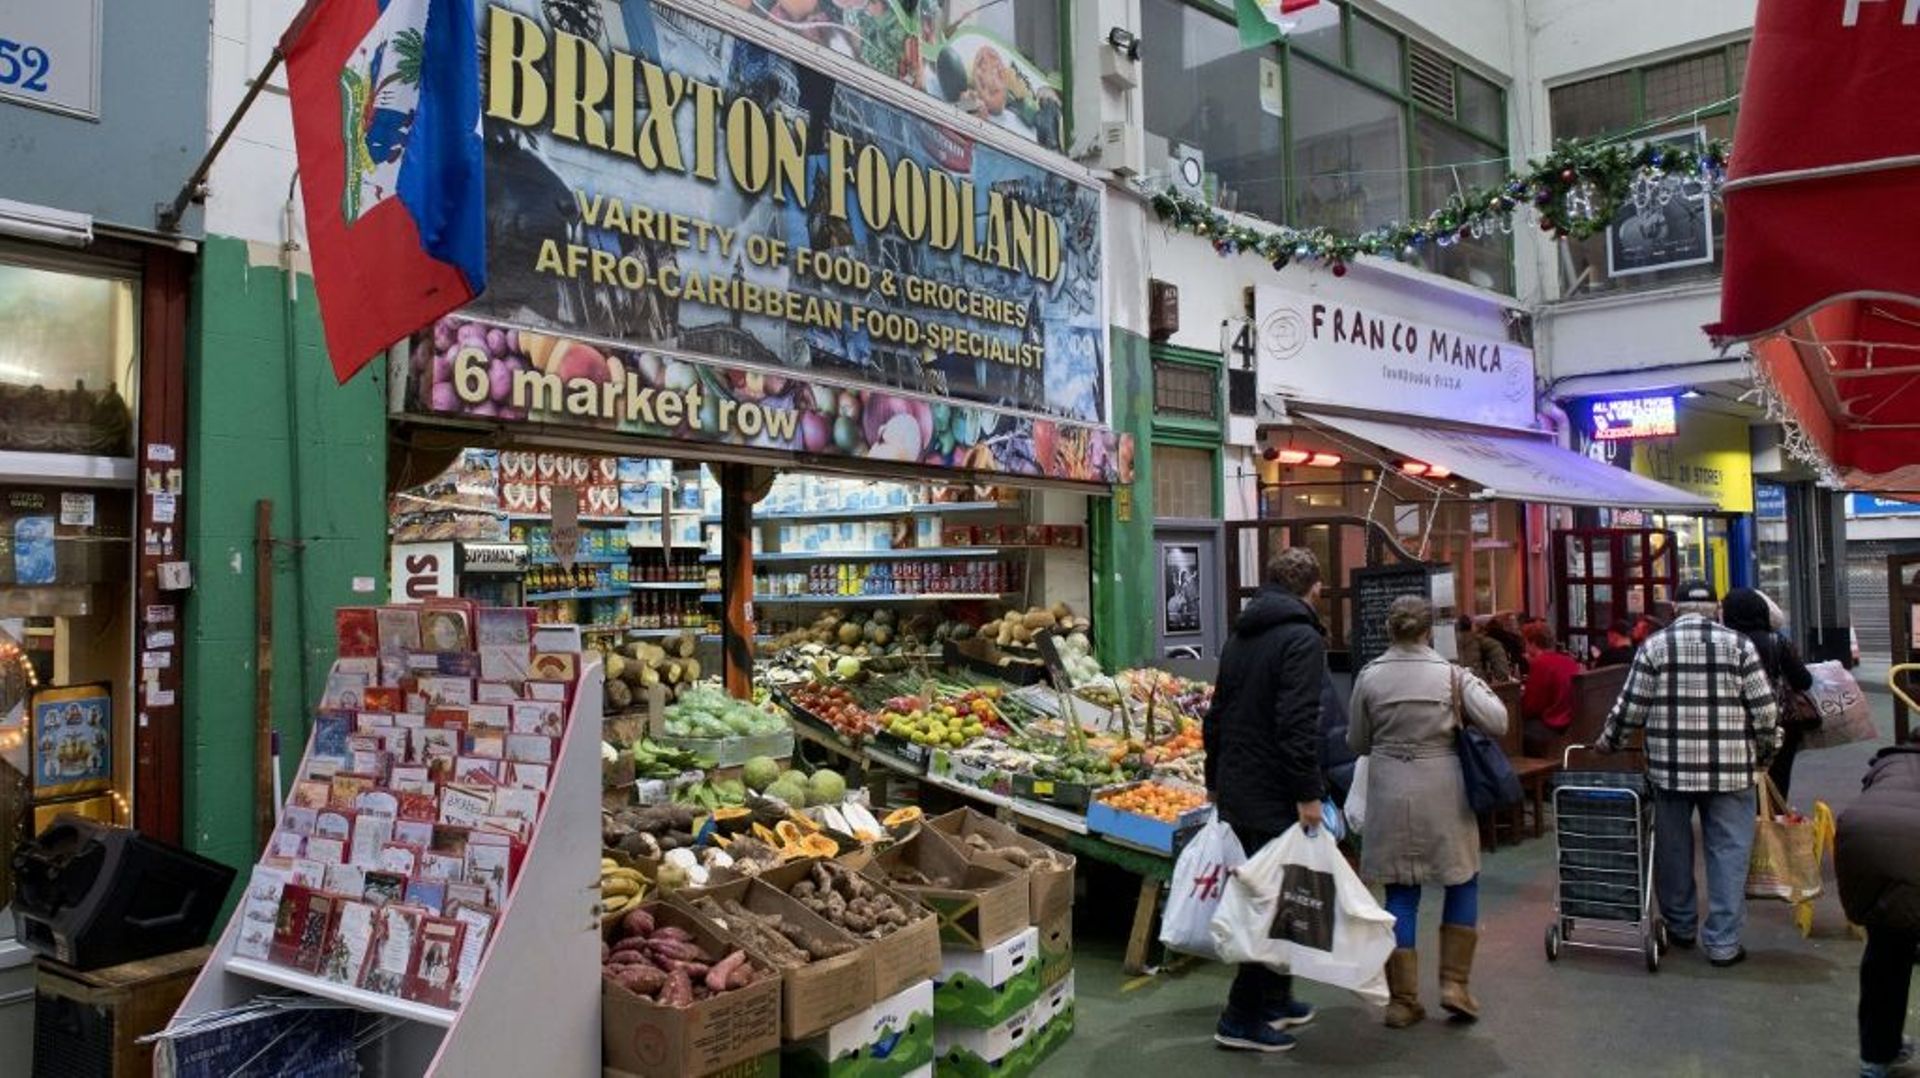 A Brixton, quatre commerçants frondeurs face à la gentrification